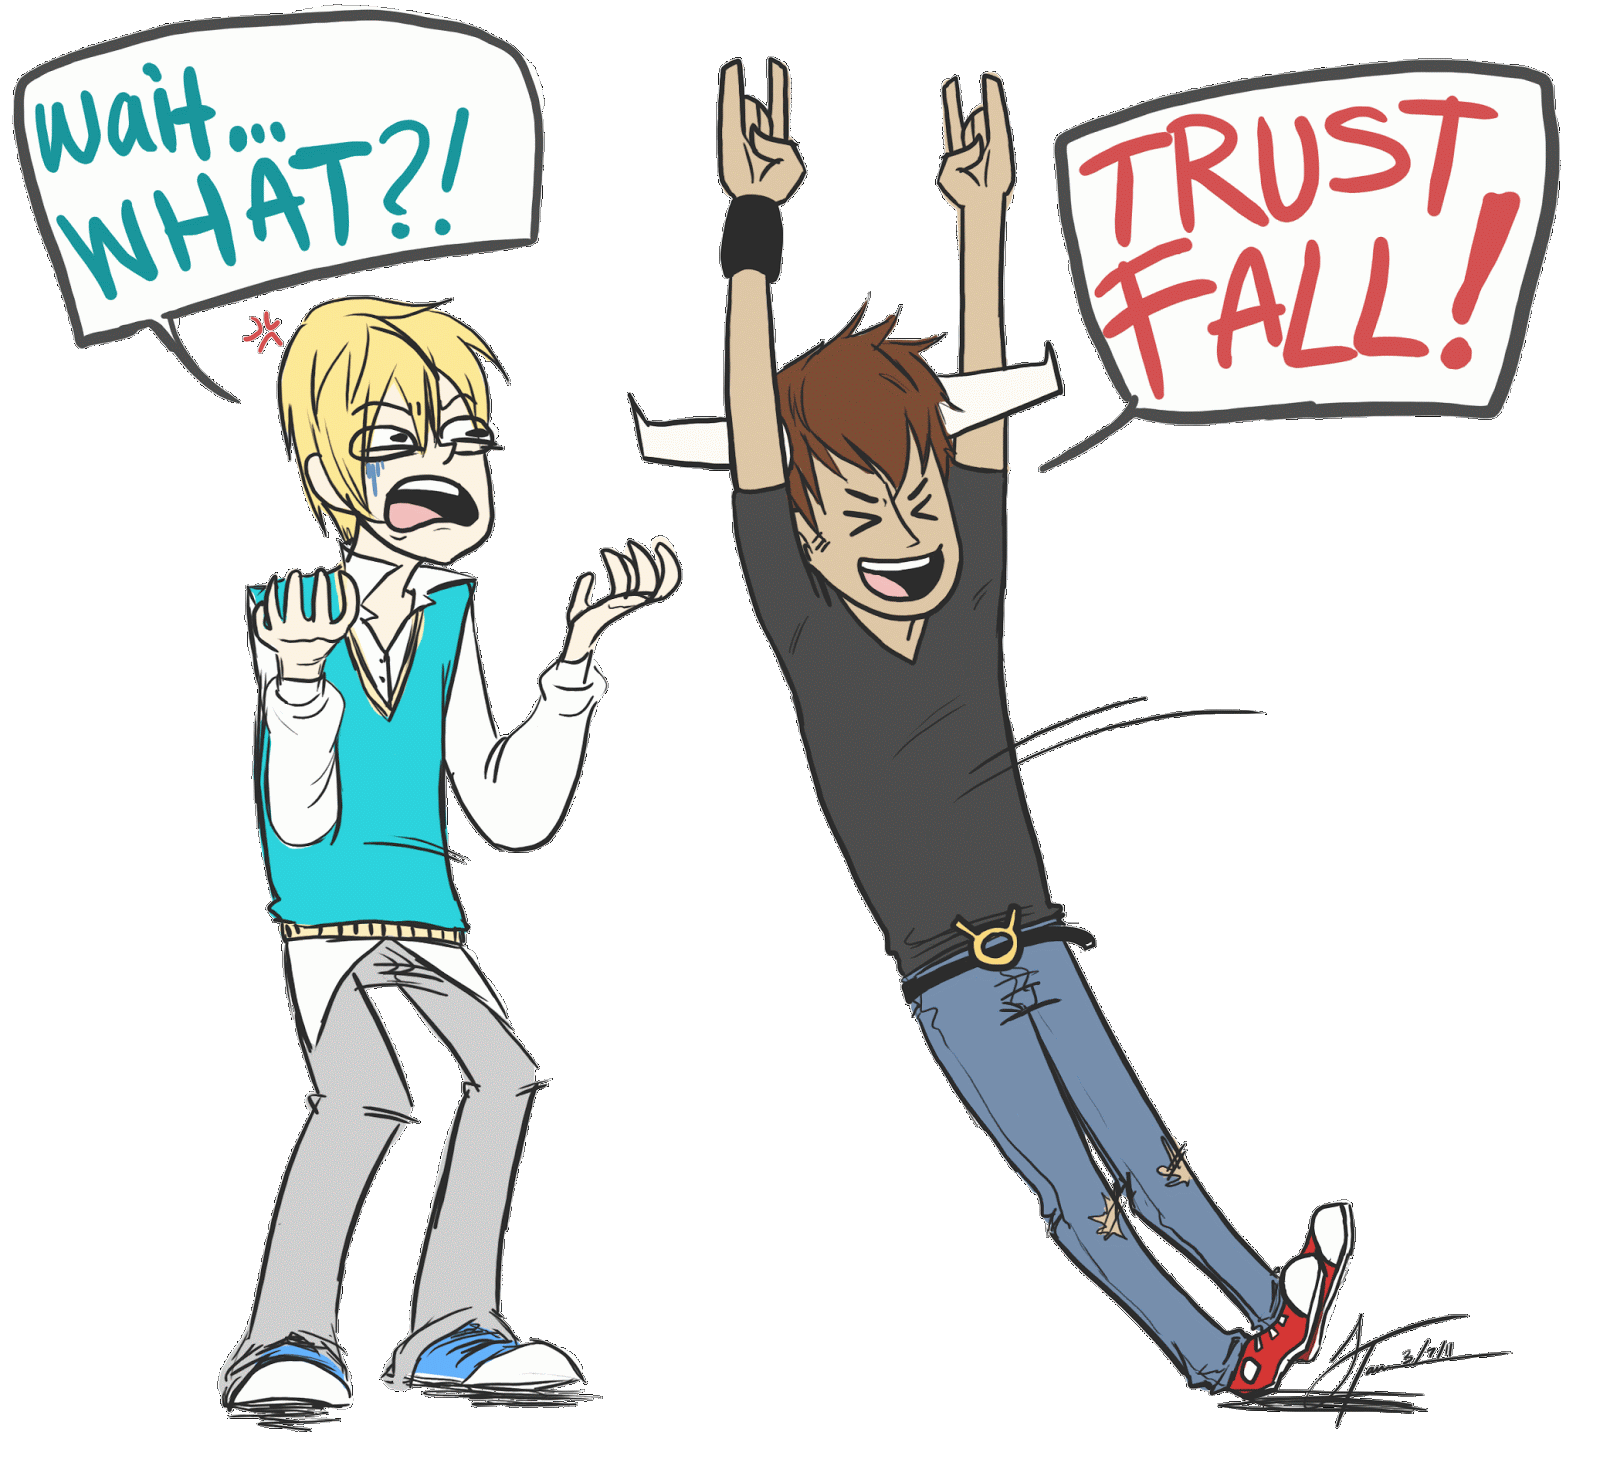 Trust trust fall